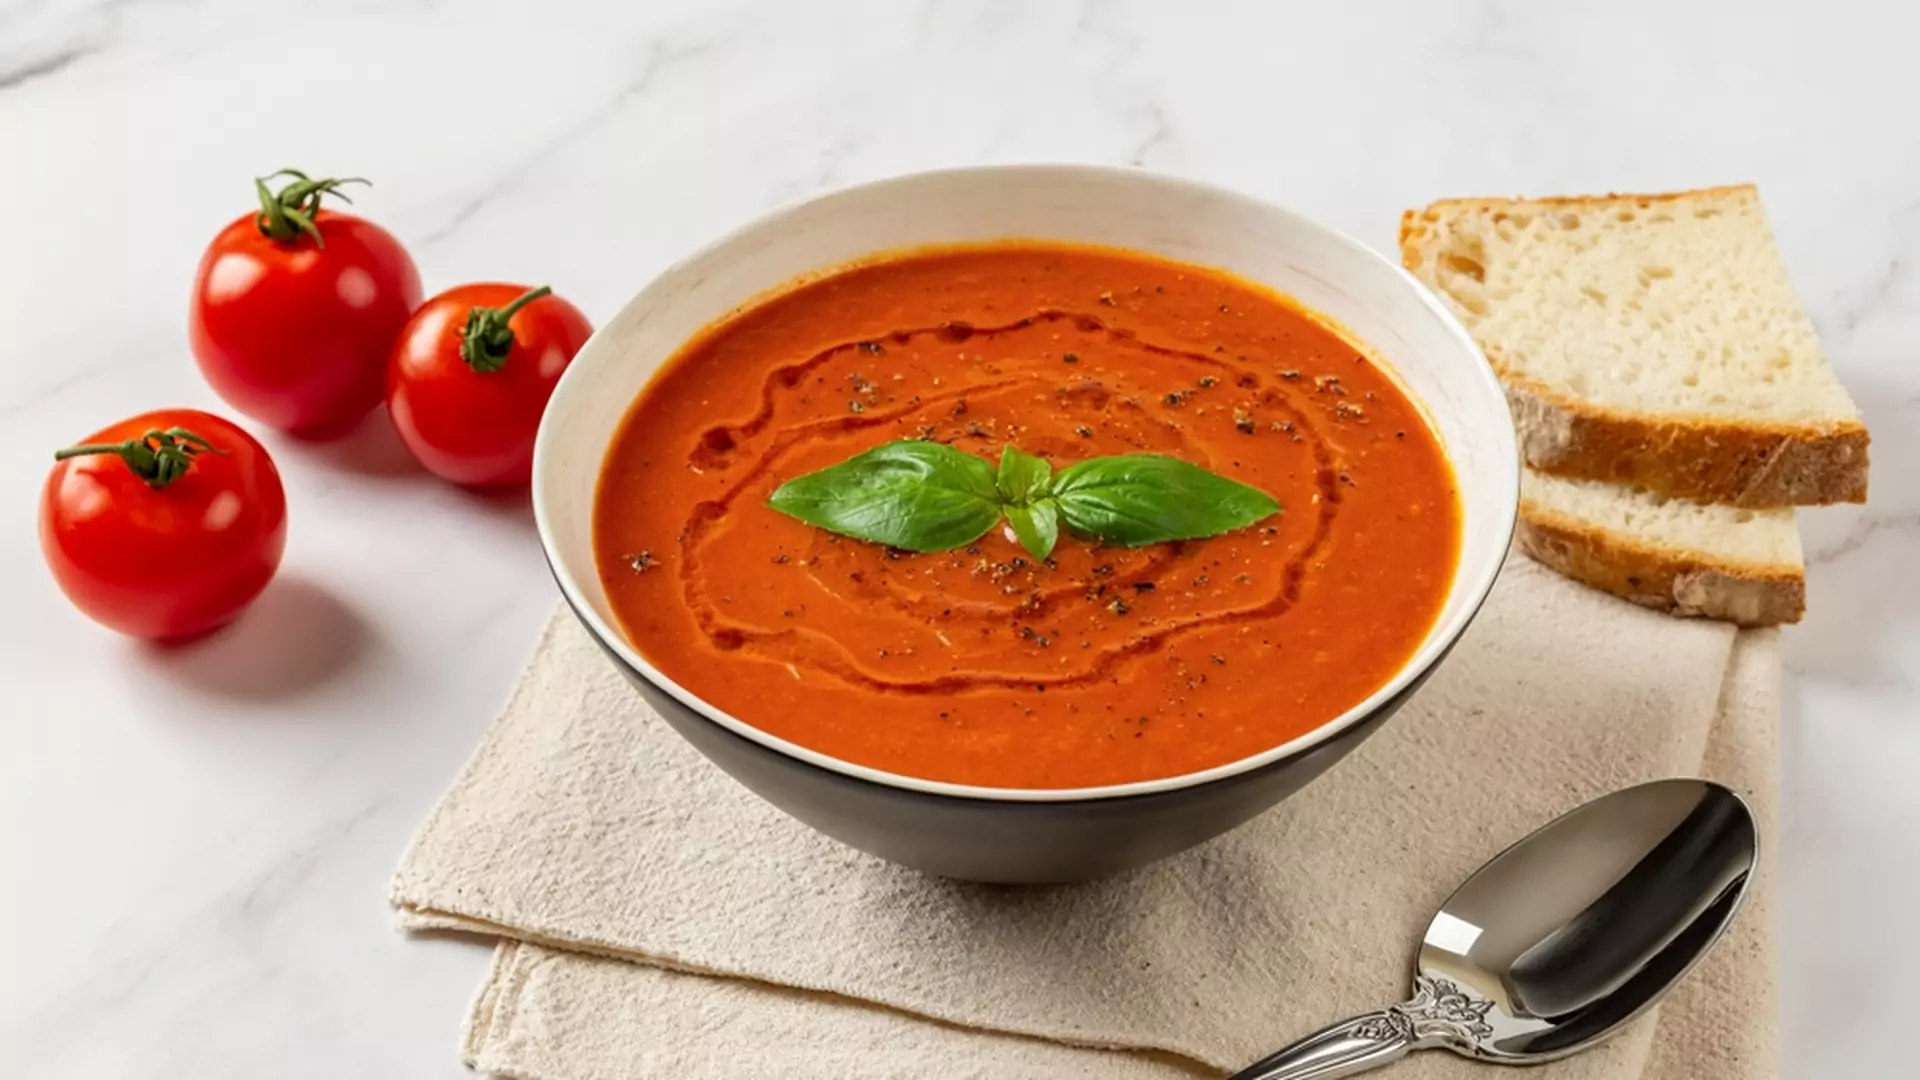 Zupa pomidorowa na soku z przepisu Magdy Gessler. Smakuje jak z prawdziwych pomidorów